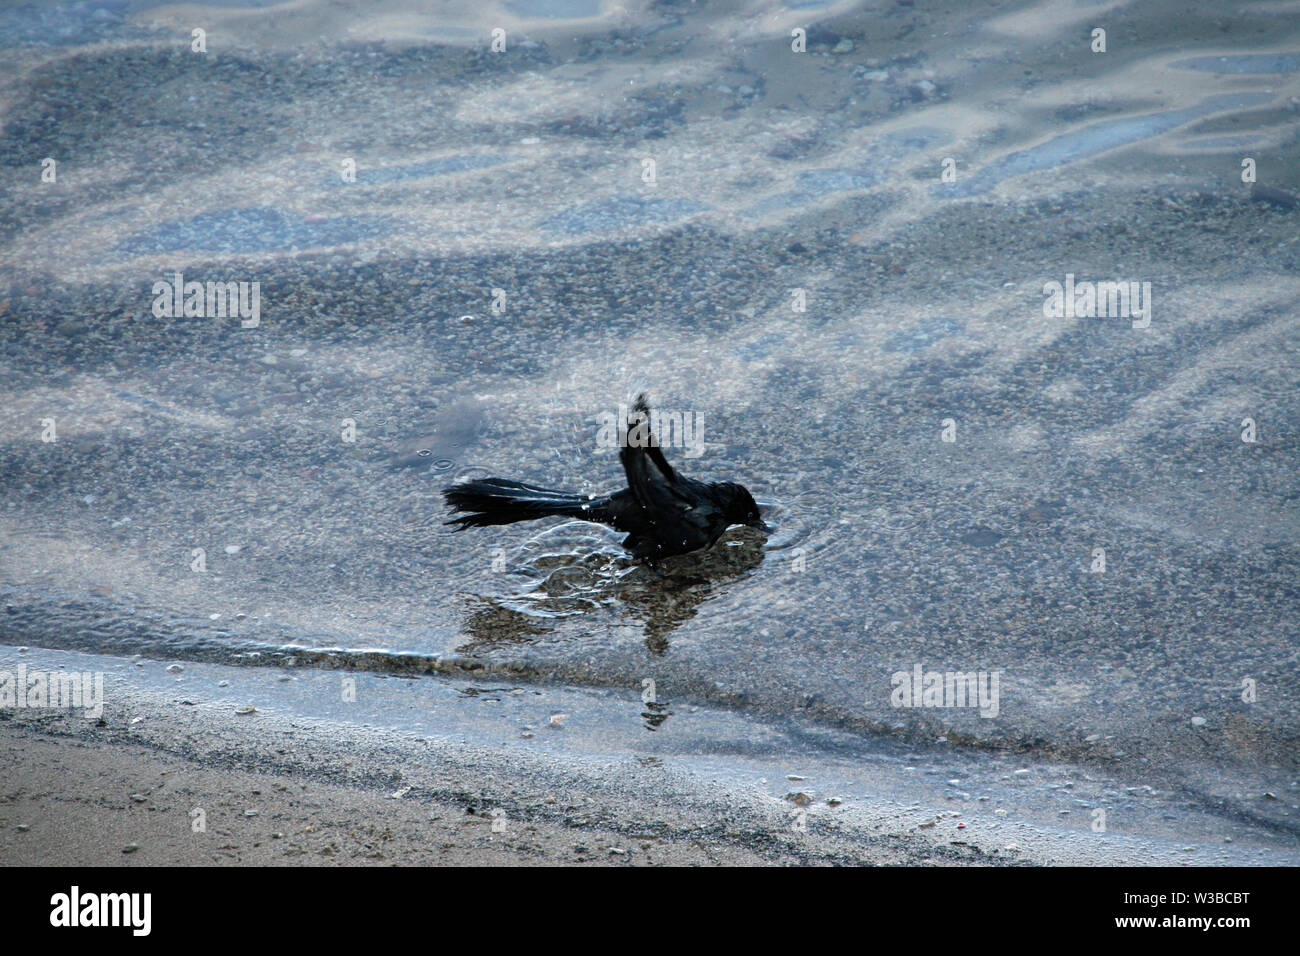 Echelle de Raven splashing in water Banque D'Images